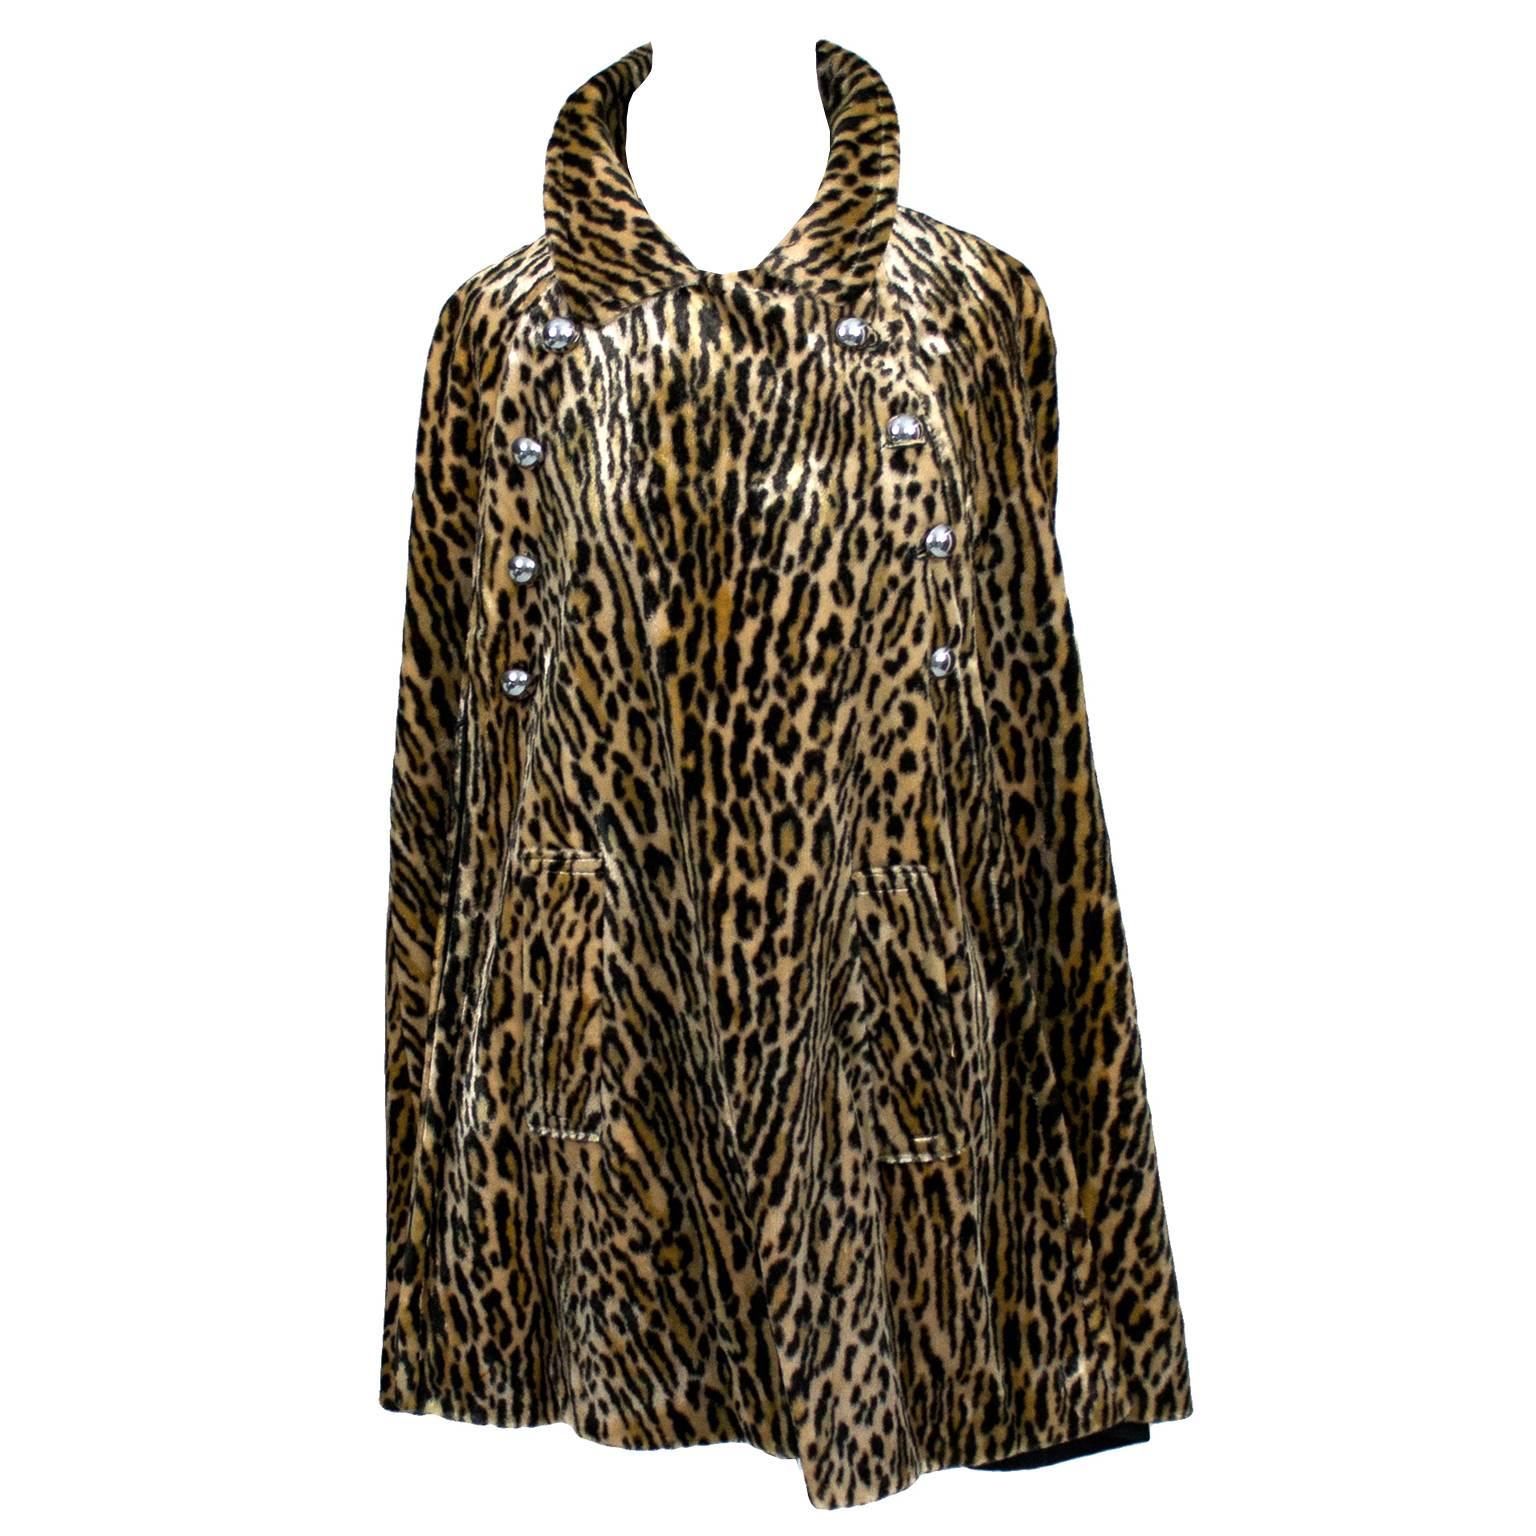 Harolde's Vintage Leopard Faux Fur Cape 1960s Chic Outerwear S/M